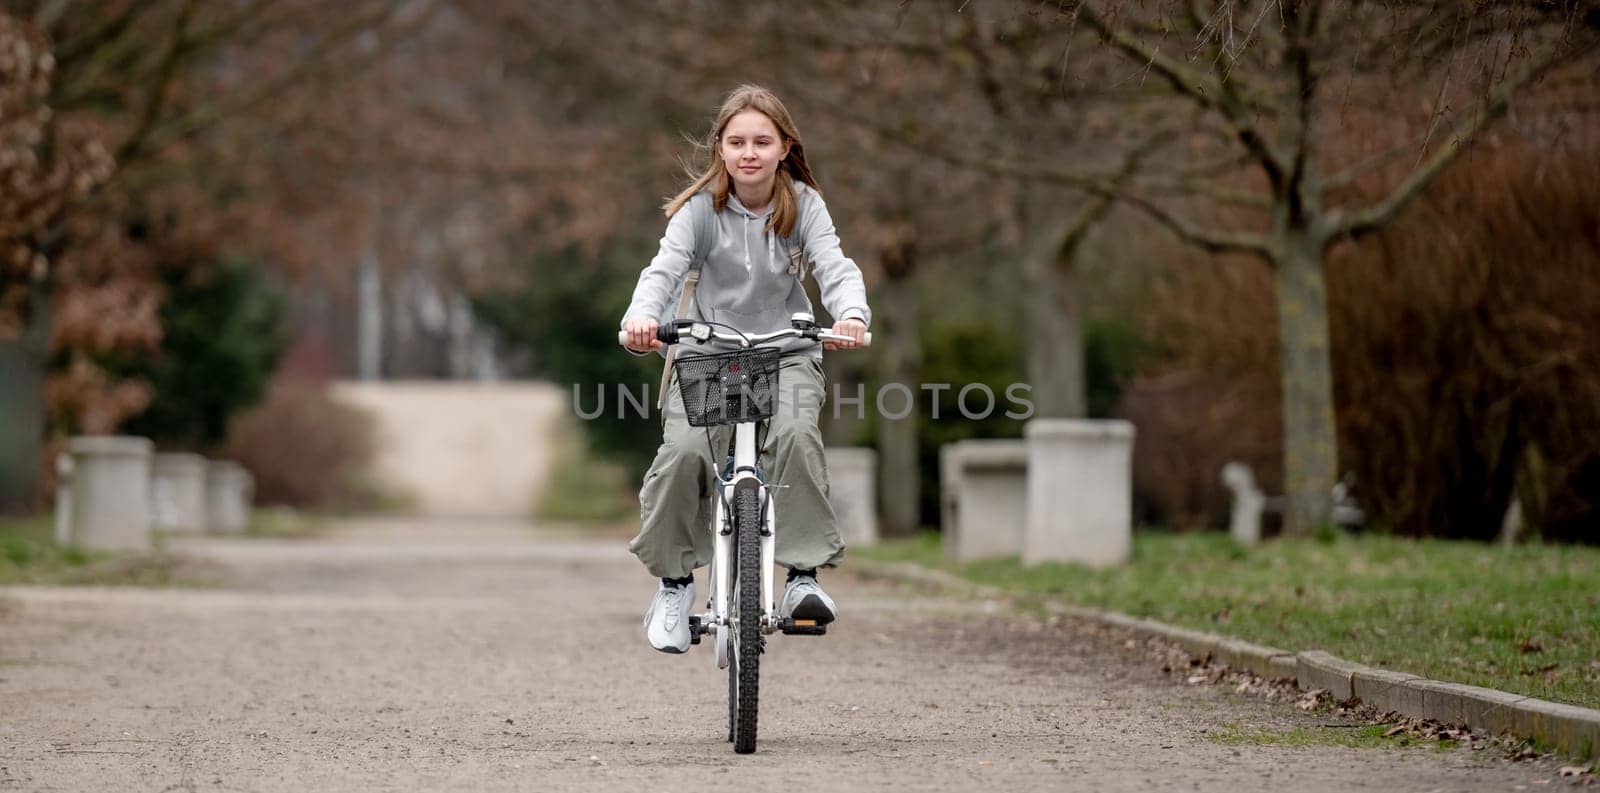 Girl Rides Bike In Spring Park by tan4ikk1